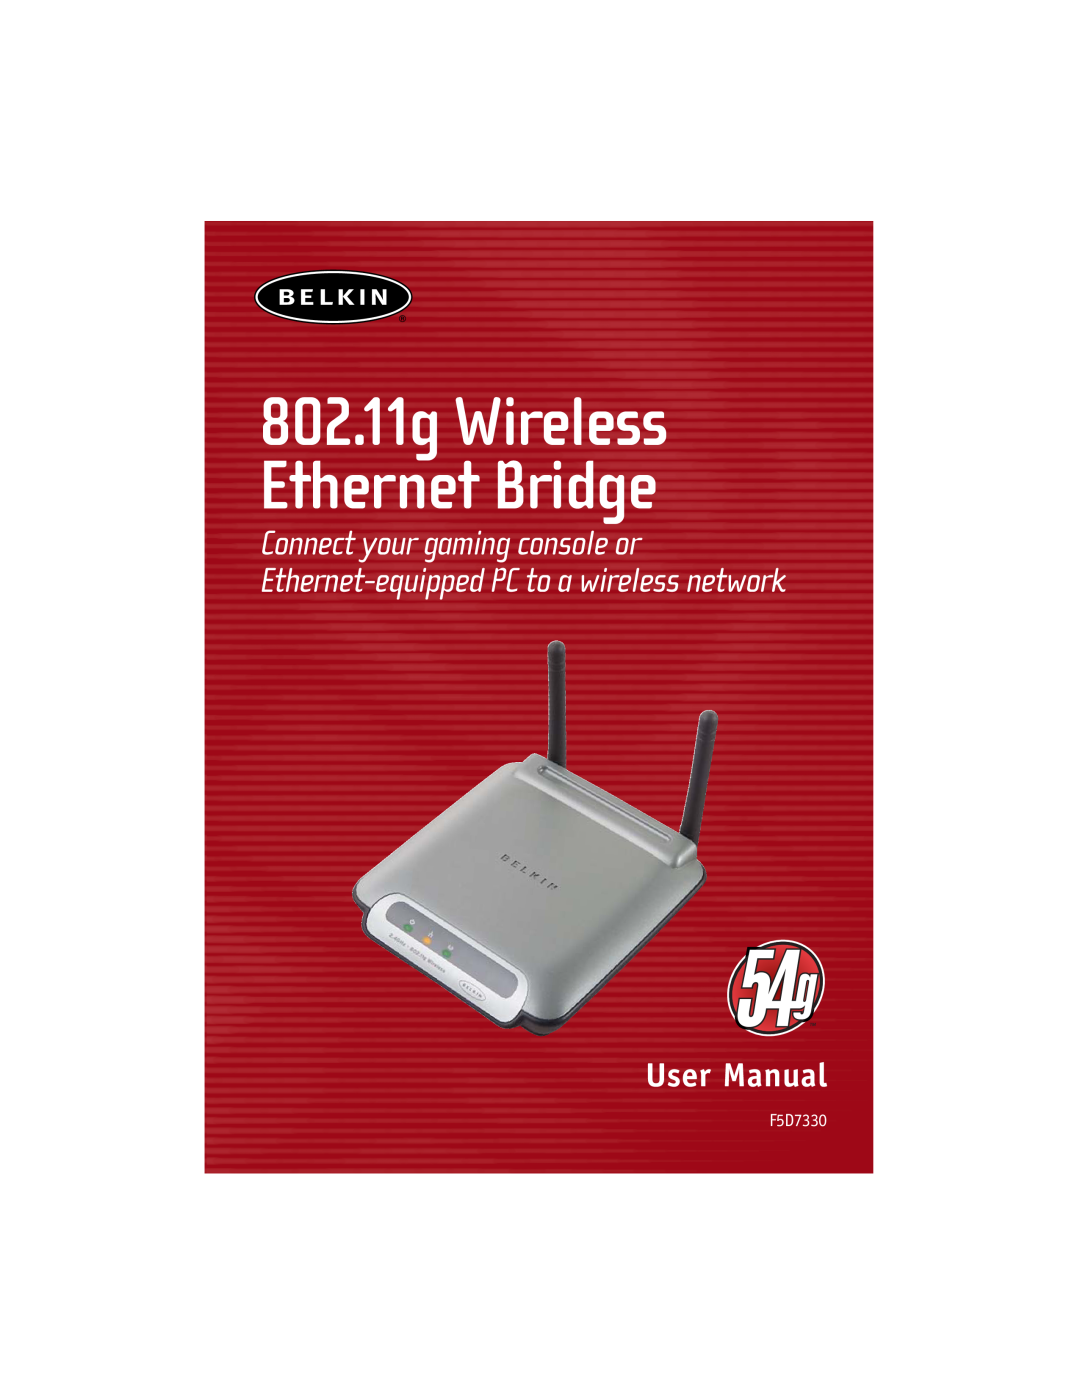 Belkin manual 802.11g Wireless Ethernet Bridge, User Manual, F5D7330 